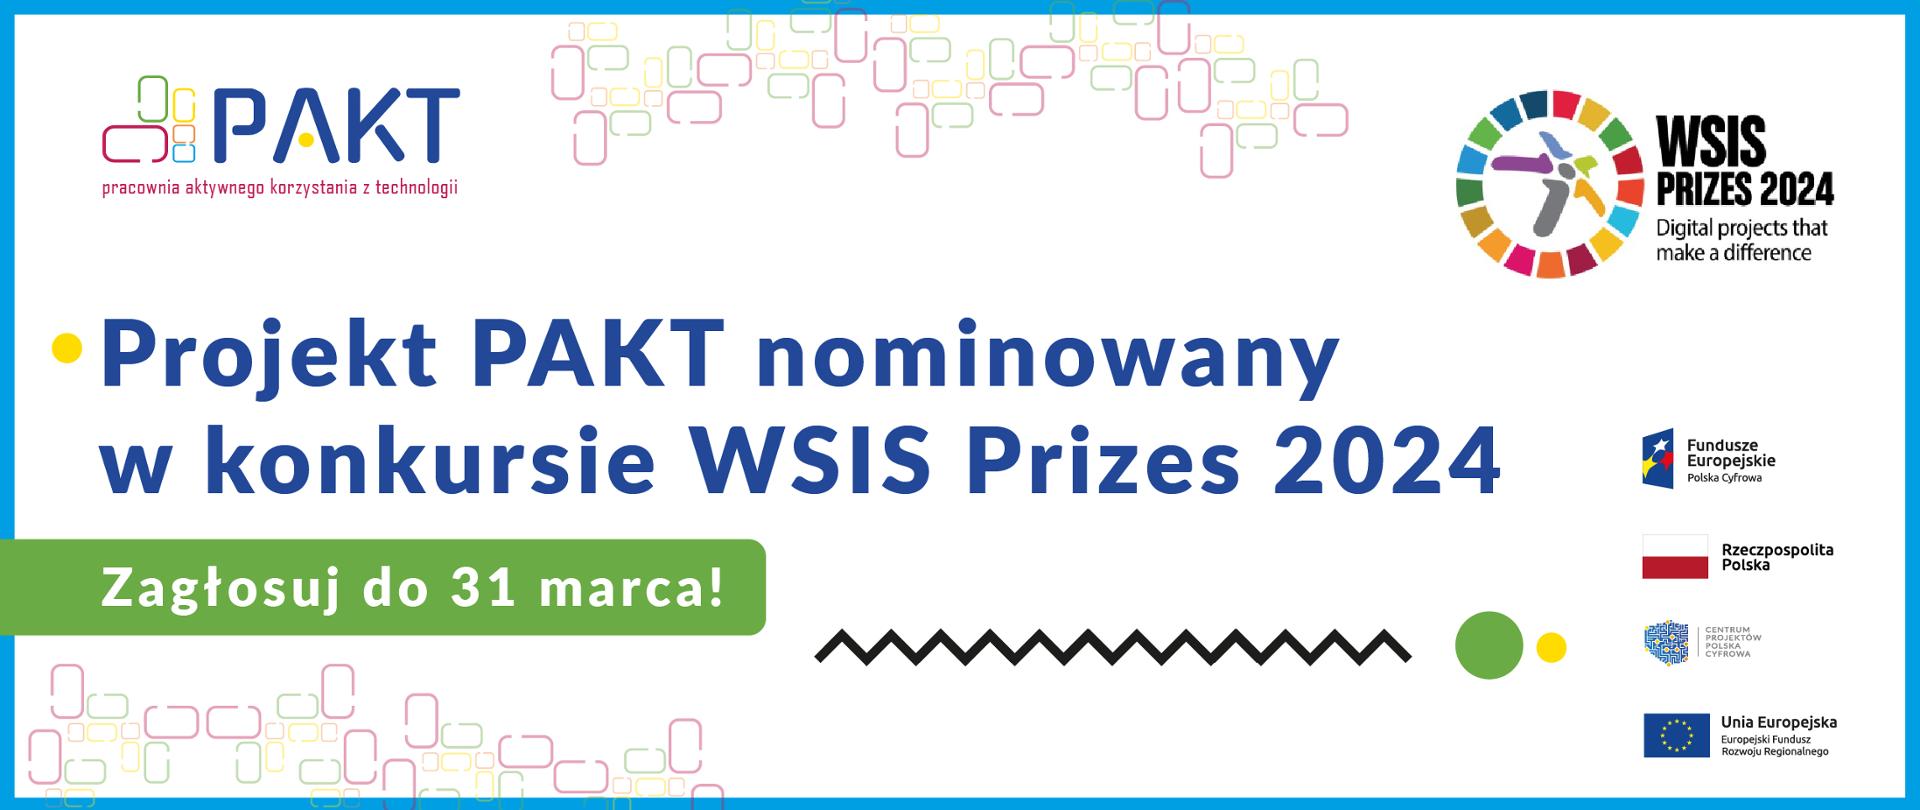 PAKT nominowany w konkursie WSIS Prizes 2024